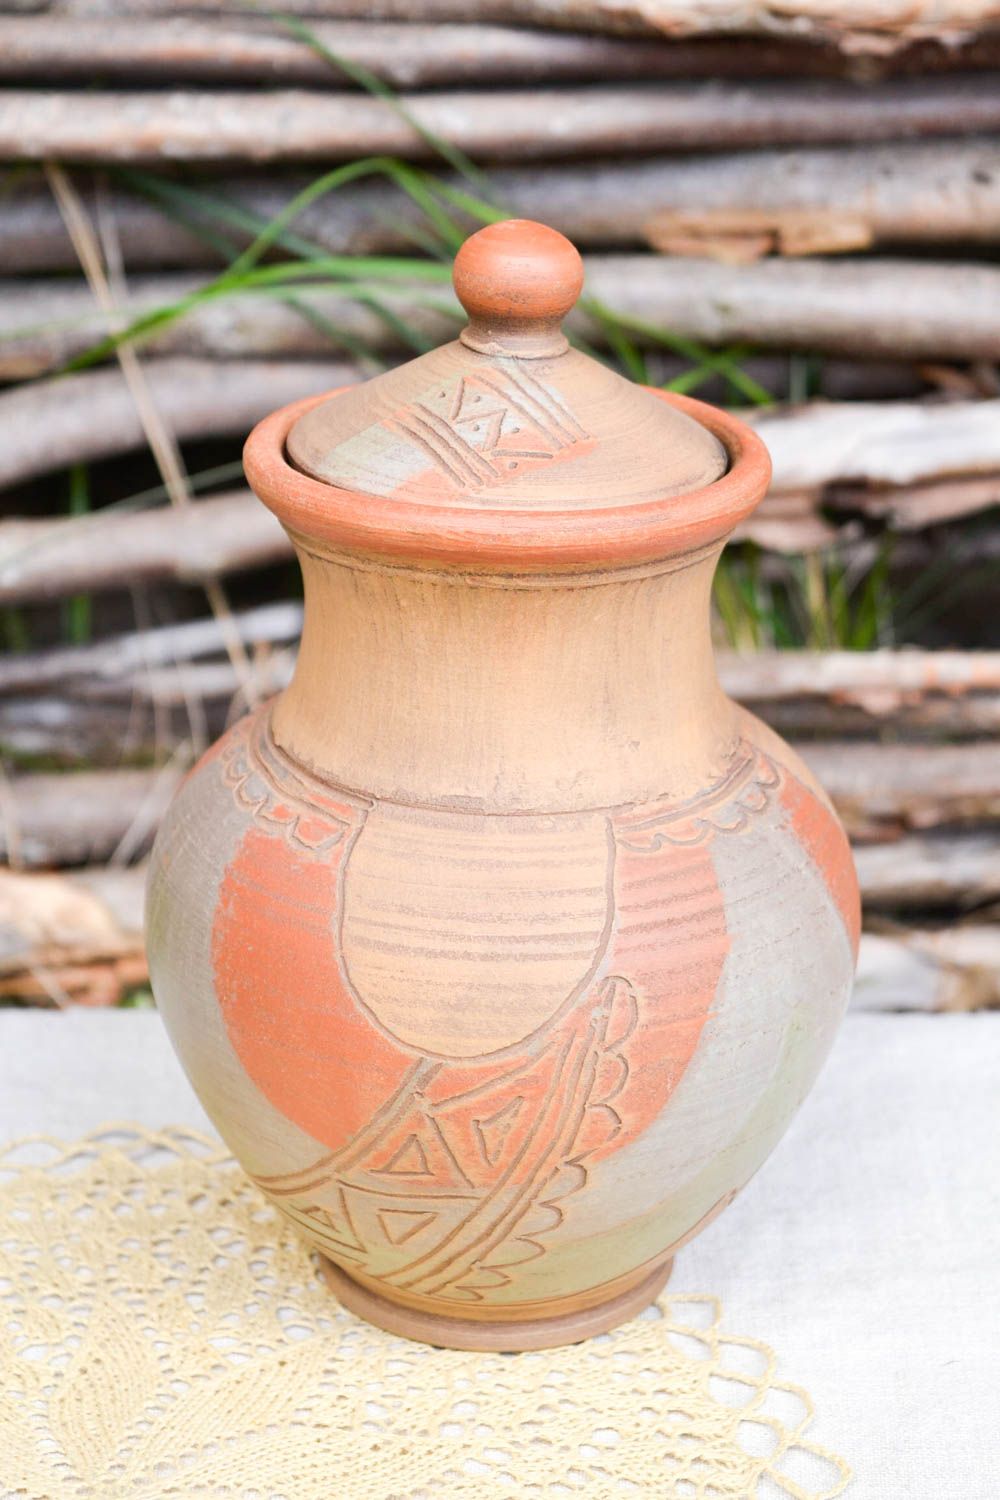 60 oz handmade ceramic milk pitcher in ethnic design 1,65 lb photo 1